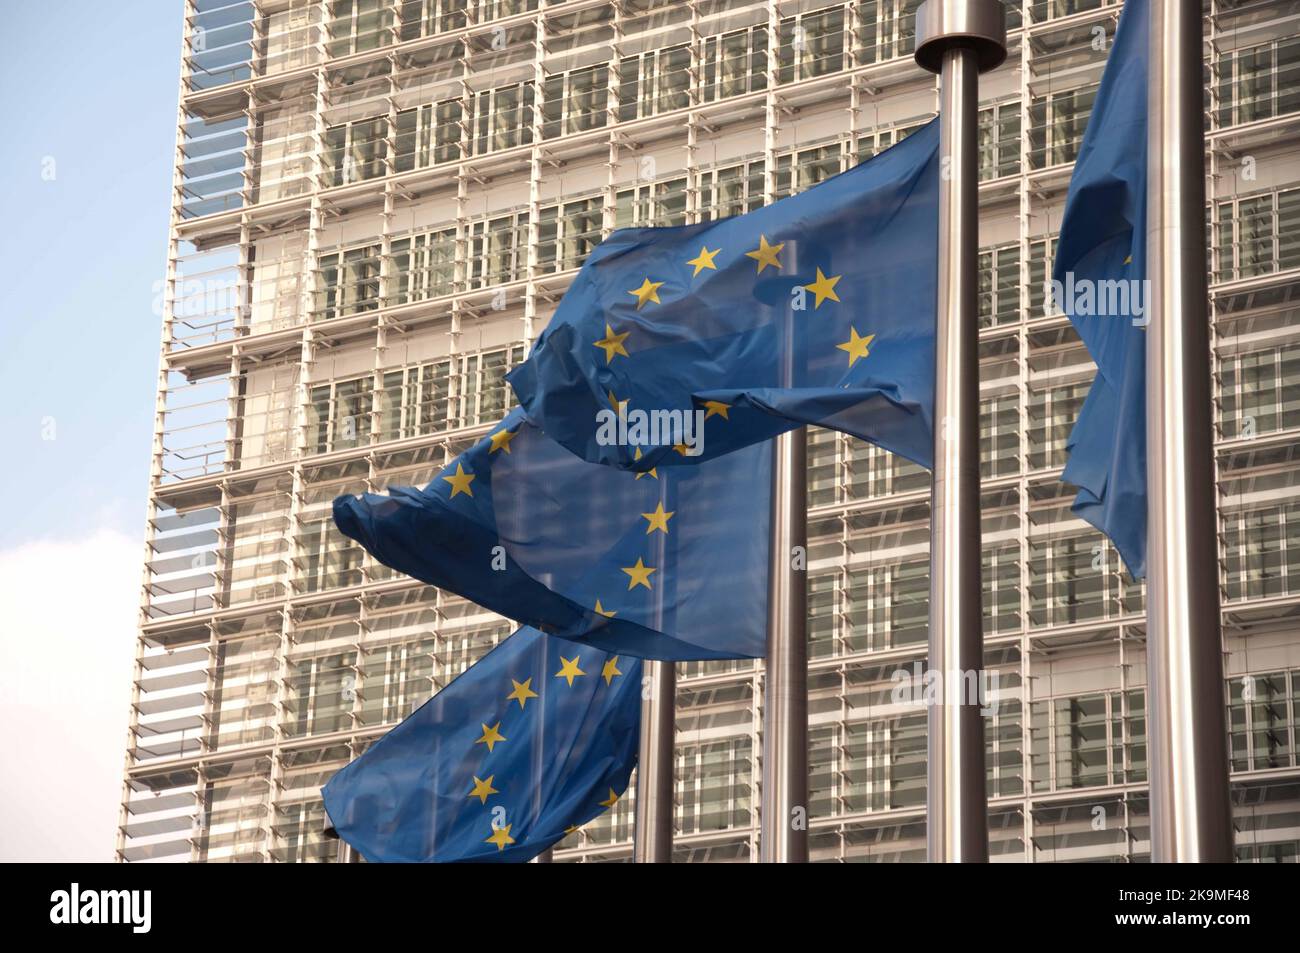 Gebäude der Europäischen Kommission, EU, Brüssel, Belgien - Flaggen der Europäischen Union Stockfoto